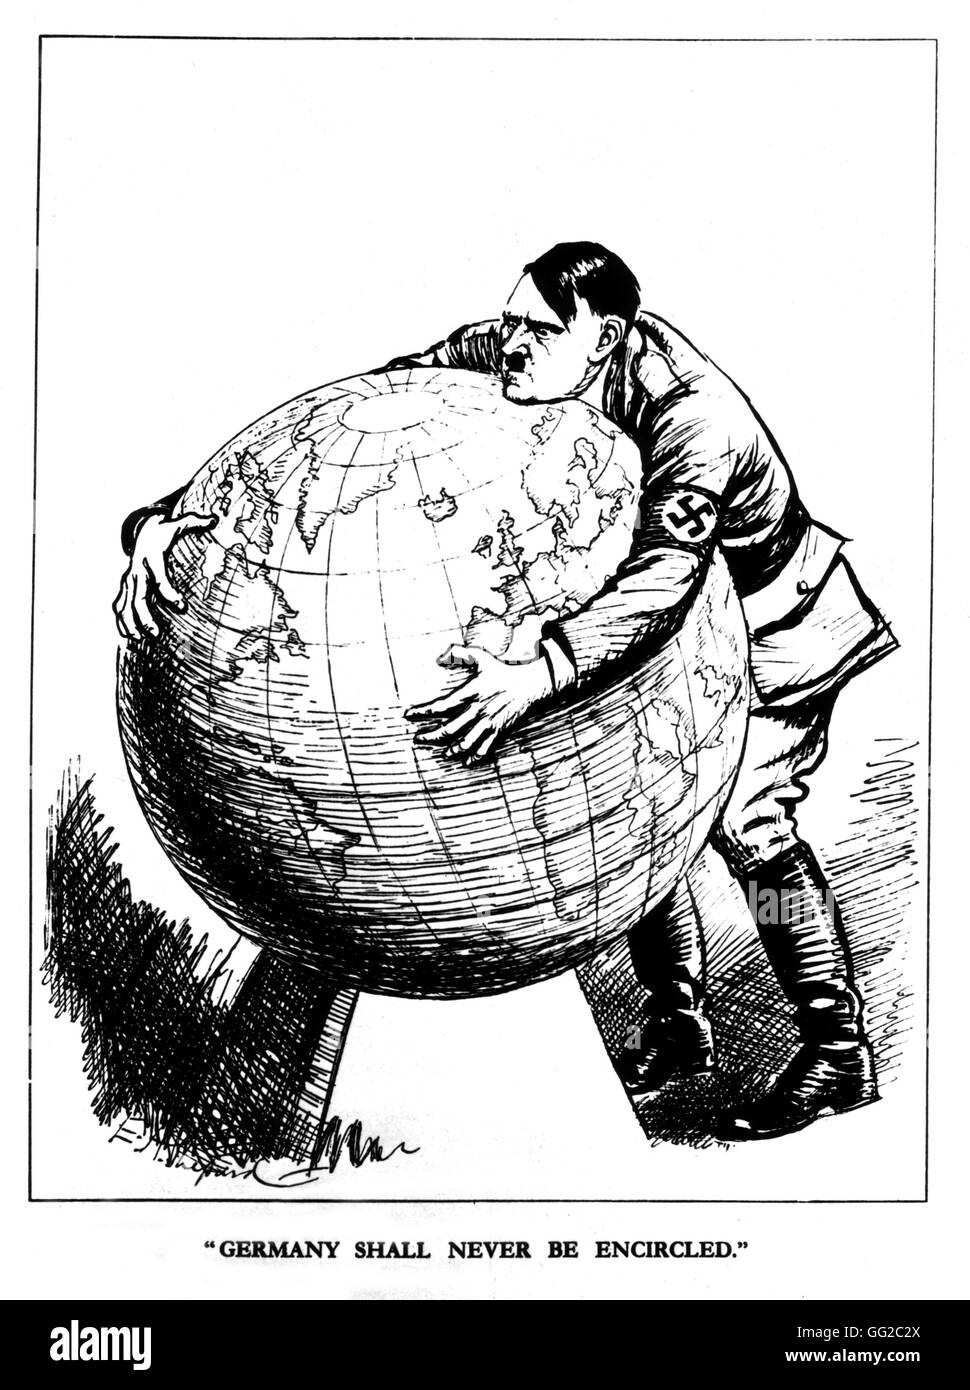 Satirische Cartoon veröffentlicht in 'Punch'. Hitler ist Grabing halten der Welt: "Deutschland wird nicht umgeben" 20. Jahrhundert Großbritannien Washington, Library of Congress Stockfoto